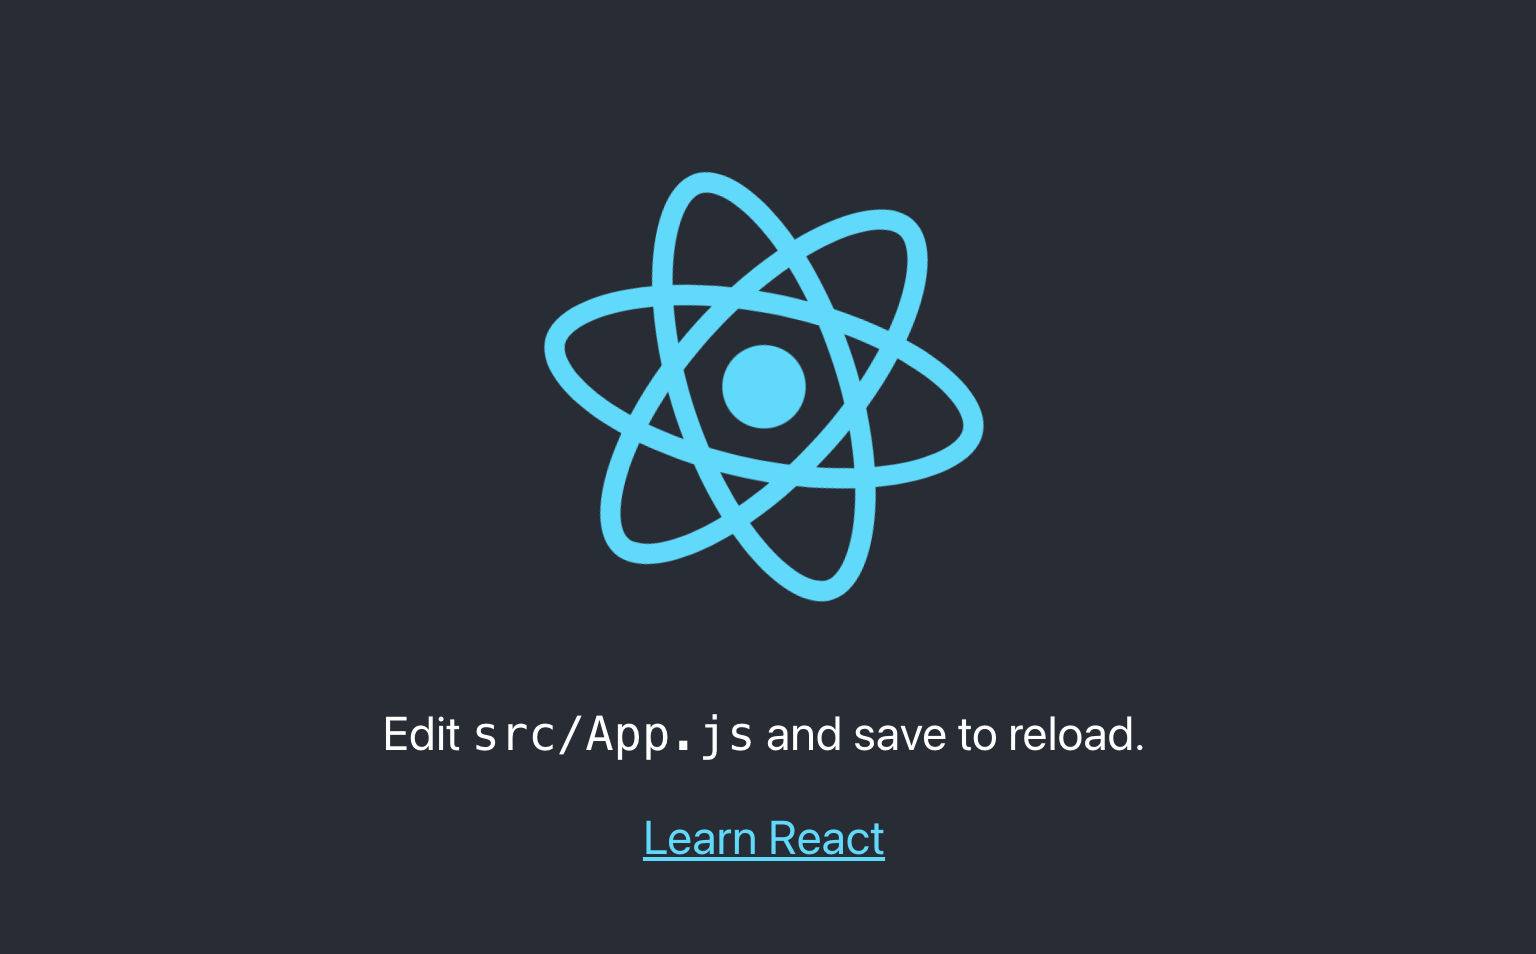 La pagina di avvio del progetto REACT